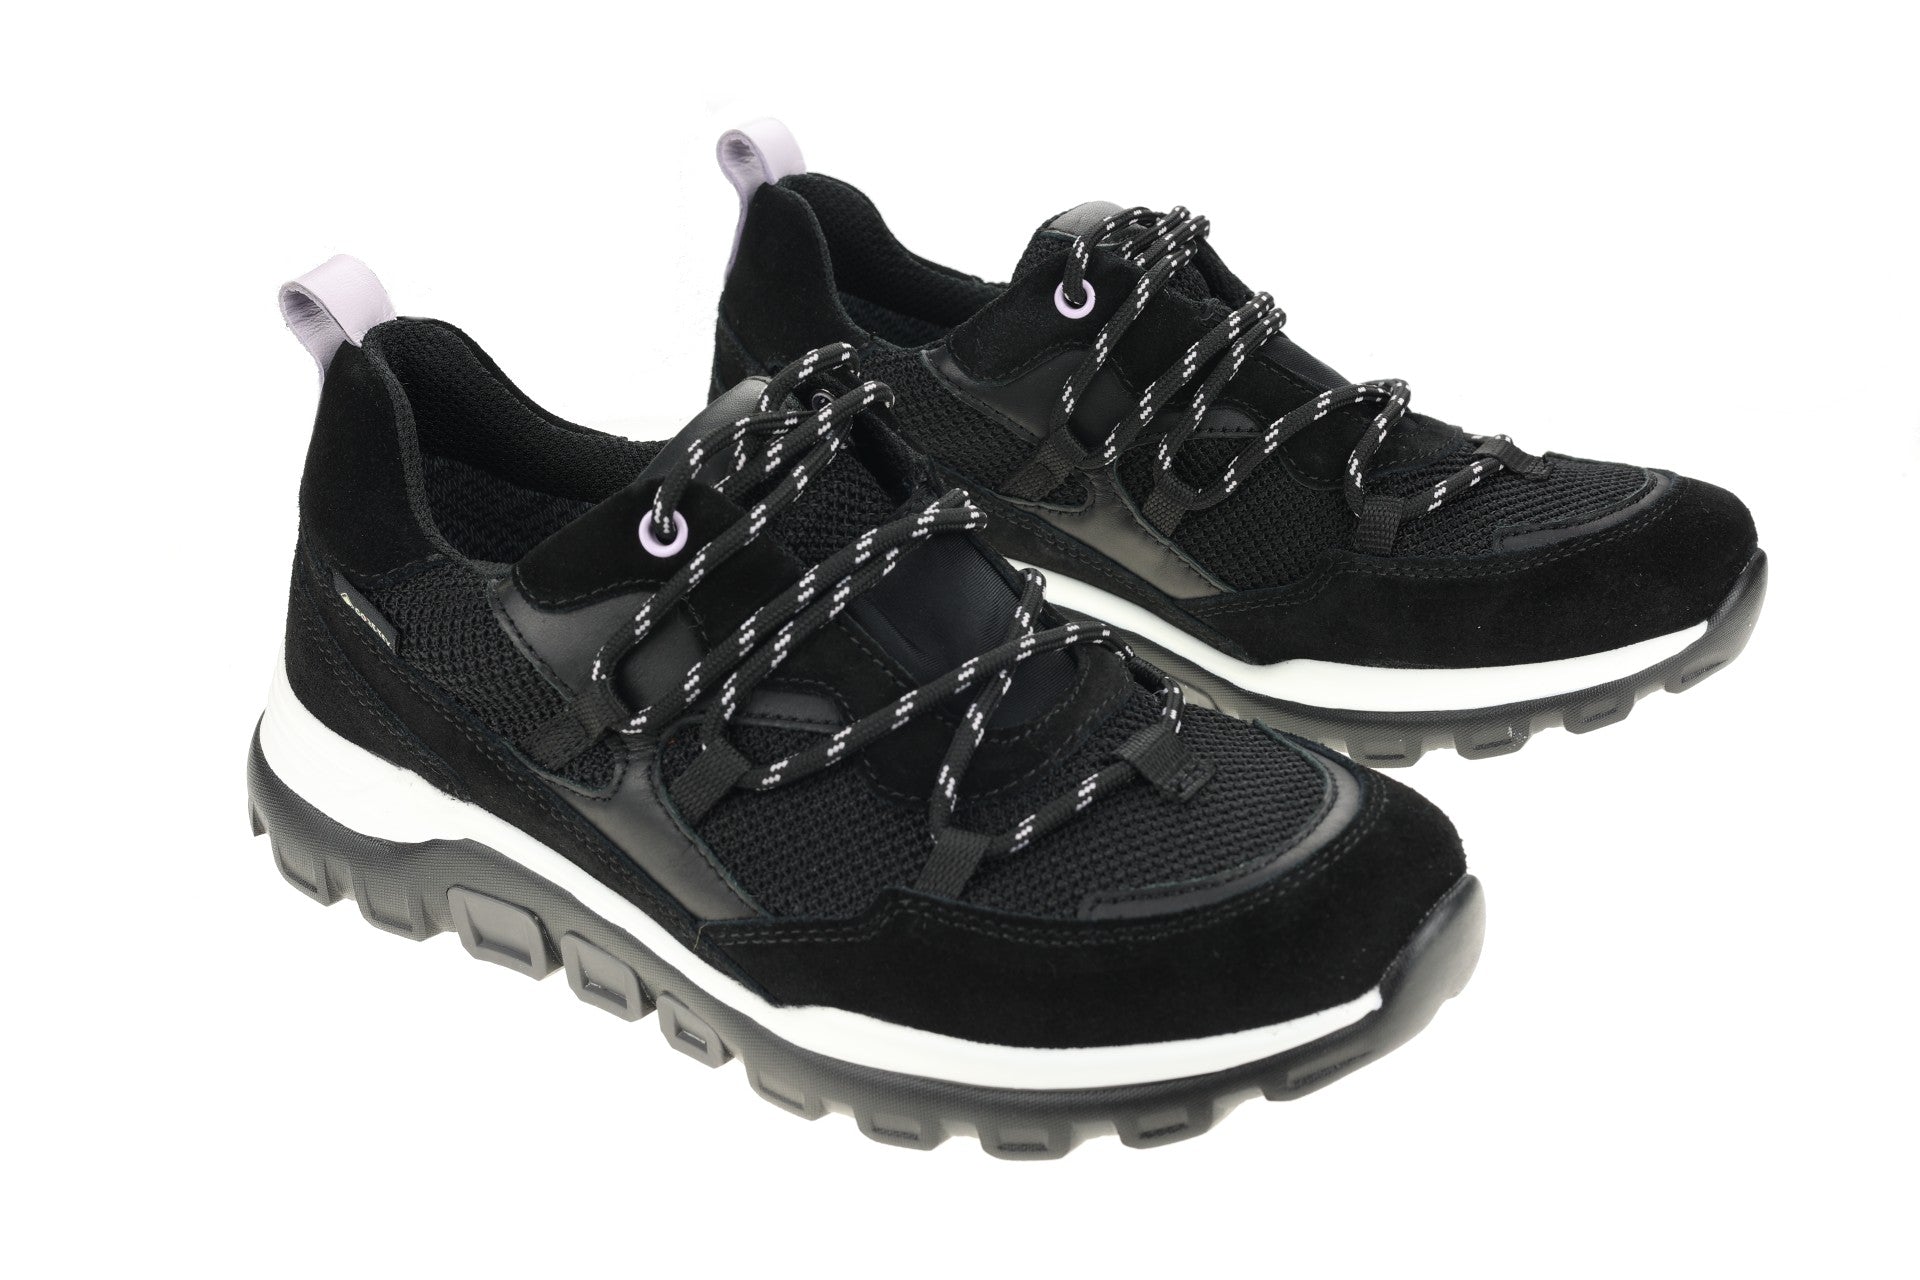 '96.924.47' women's walking sneaker - waterproof - Chaplinshoes'96.924.47' women's walking sneaker - waterproofGabor